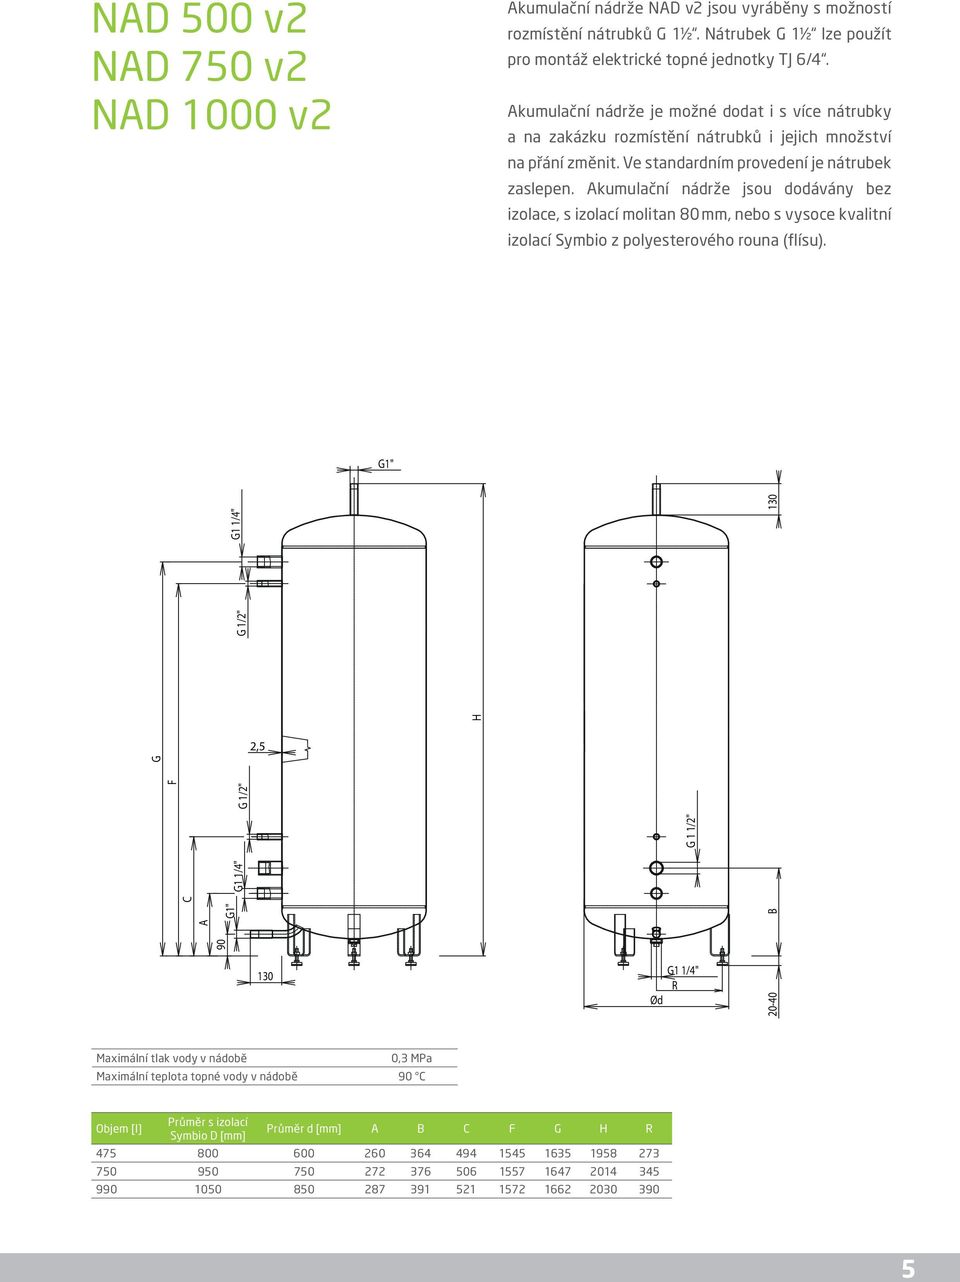 kumulační nádrže jsou dodávány bez izolace, s izolací molitan 80 mm, nebo s vysoce kvalitní izolací Symbio z polyesterového rouna (flísu).